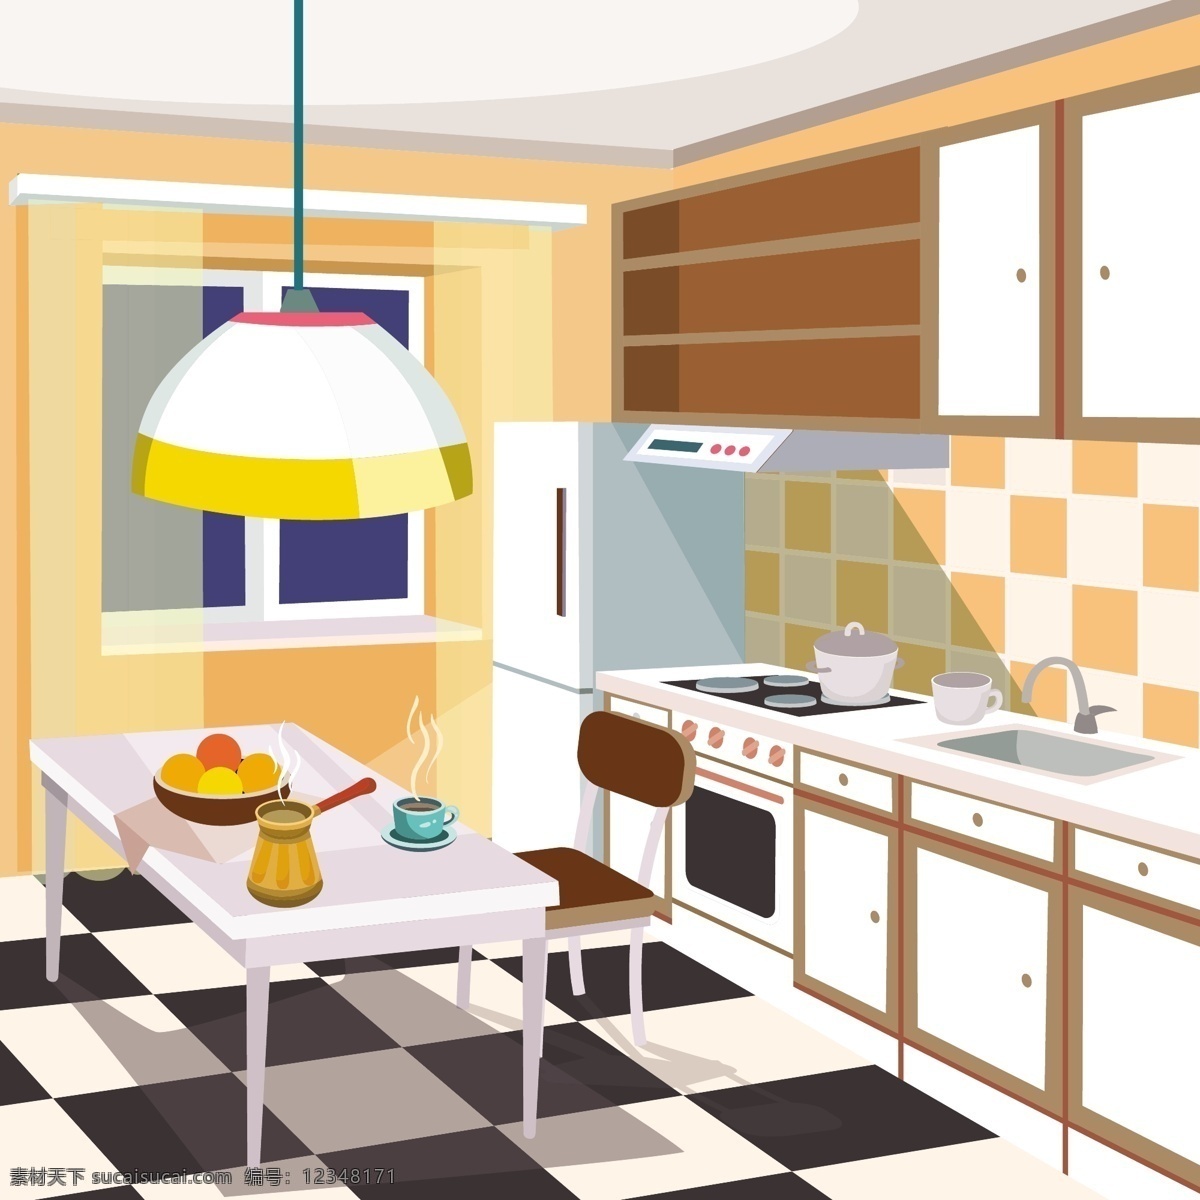 一个 厨房 内部 矢量 卡通 插画 背景 咖啡 家居 家庭 桌子 漫画 平面设计 图形 墙壁 家具 房间 灯 烹饪 咖啡杯 装饰 窗户